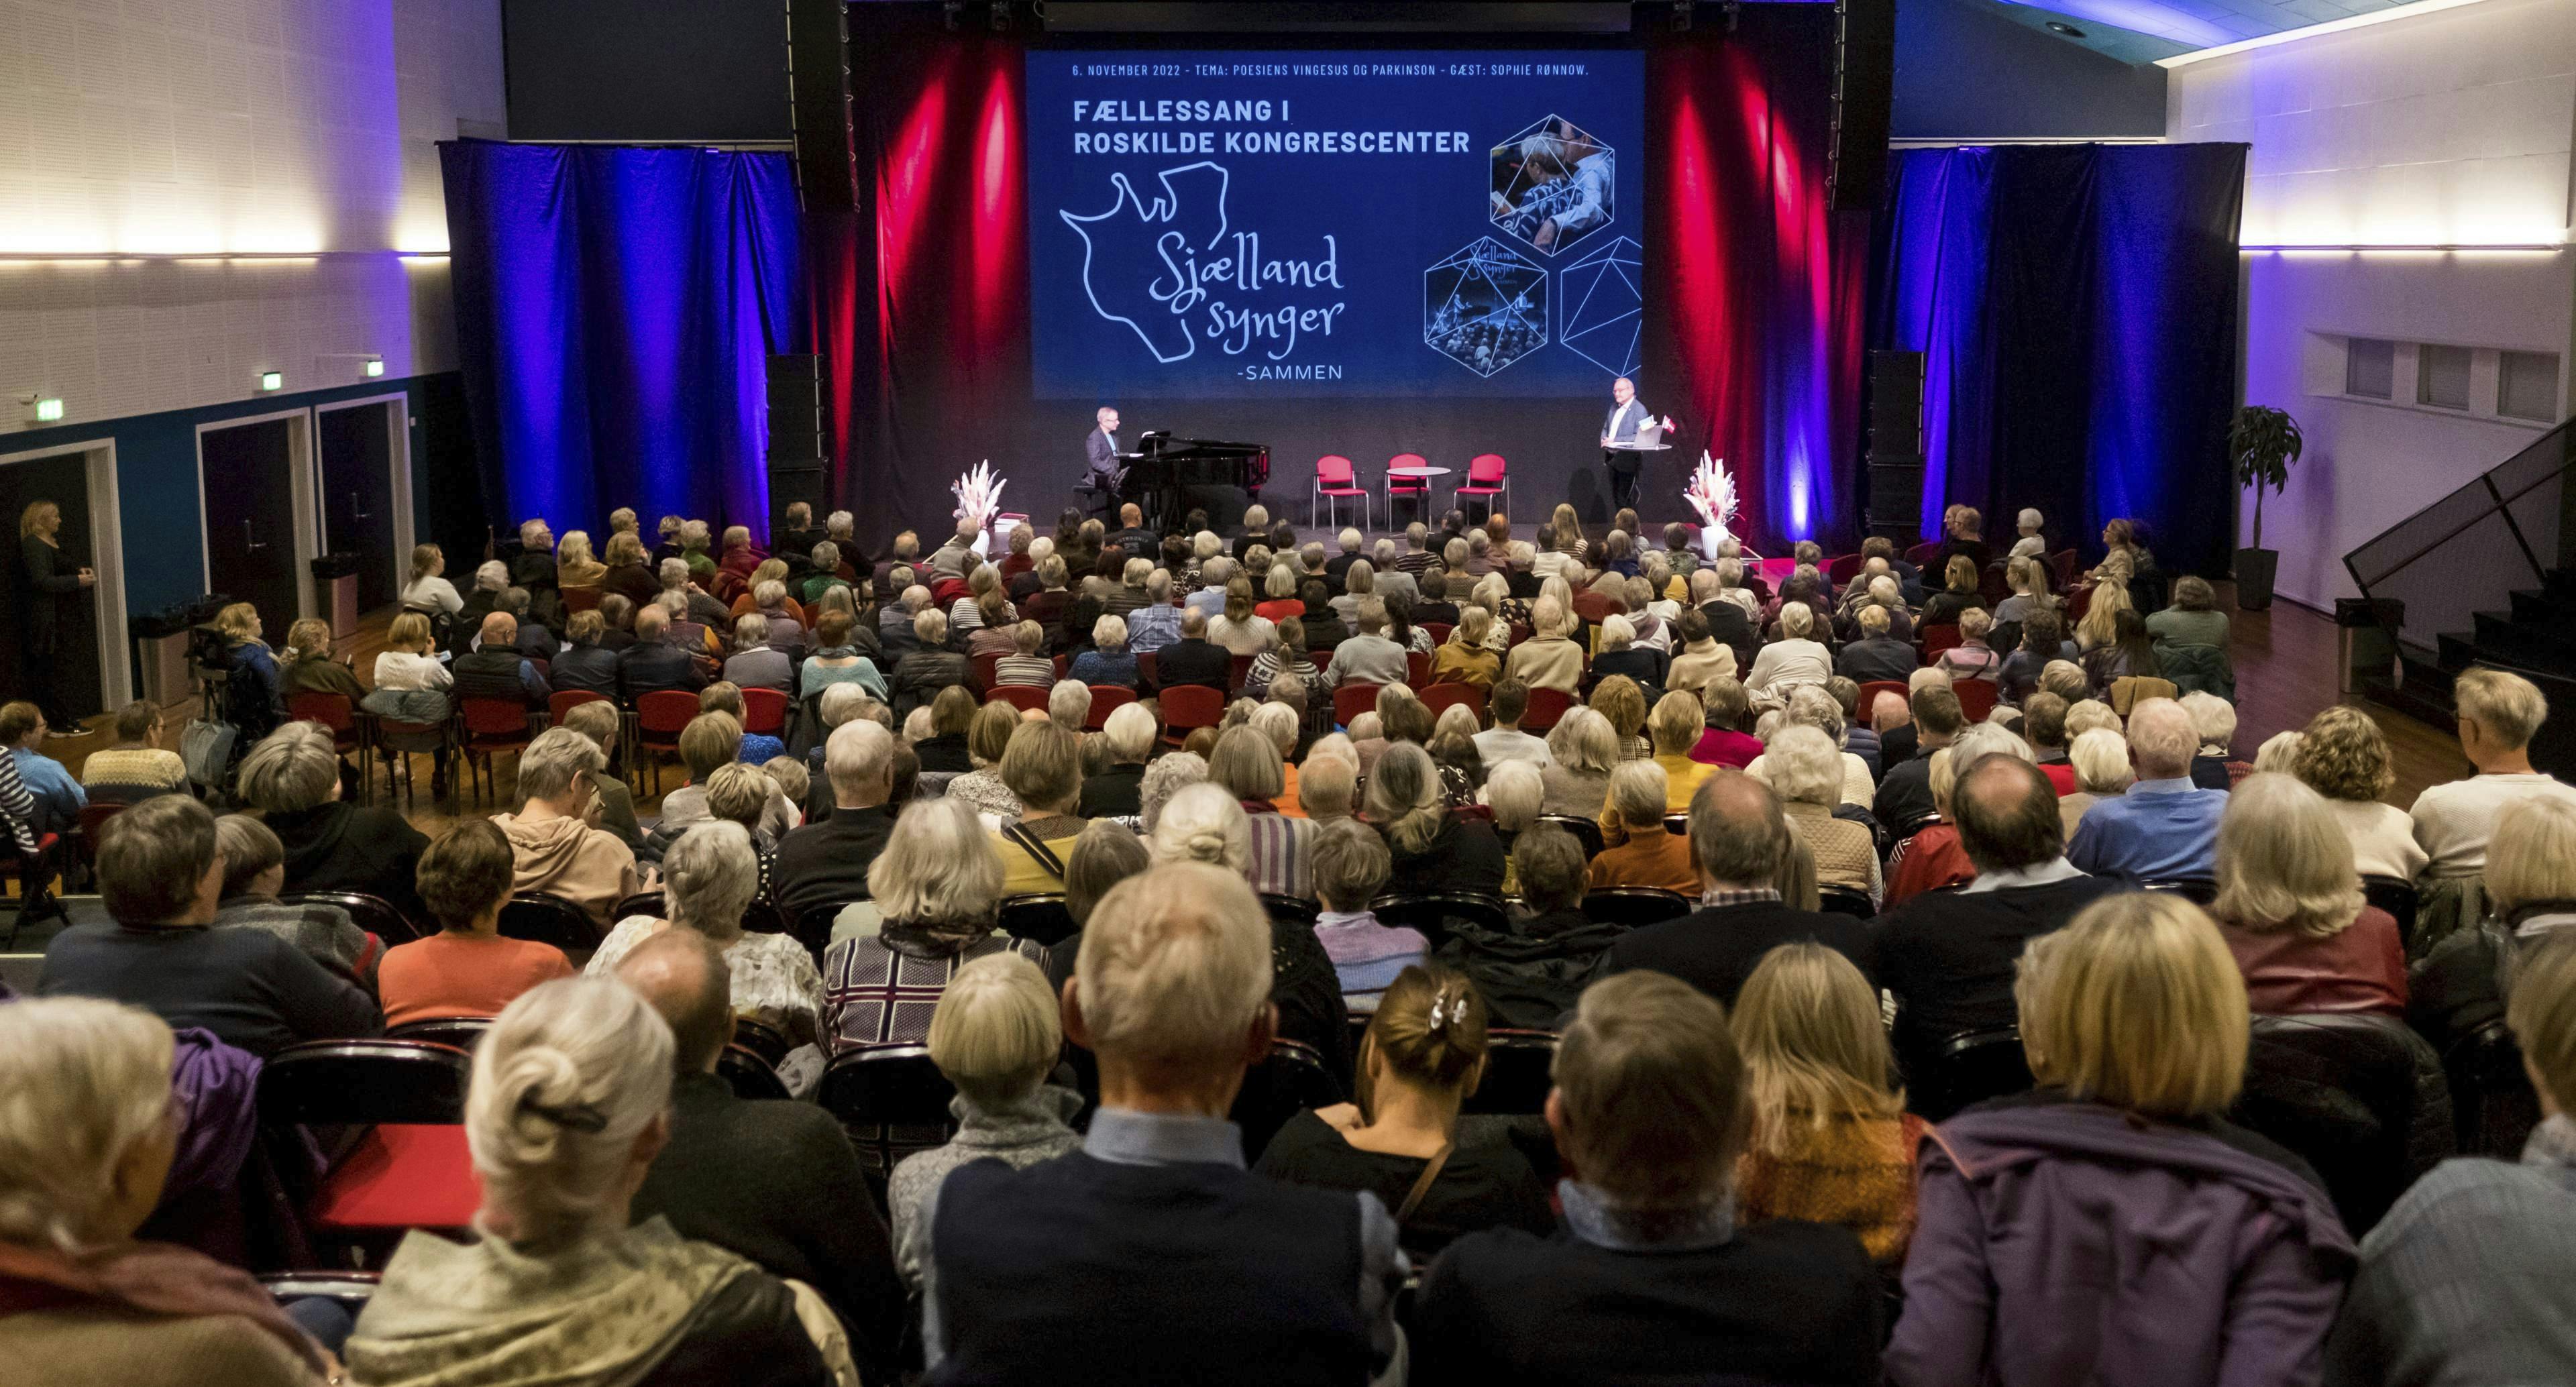 Sjælland synger fællessang i Roskilde